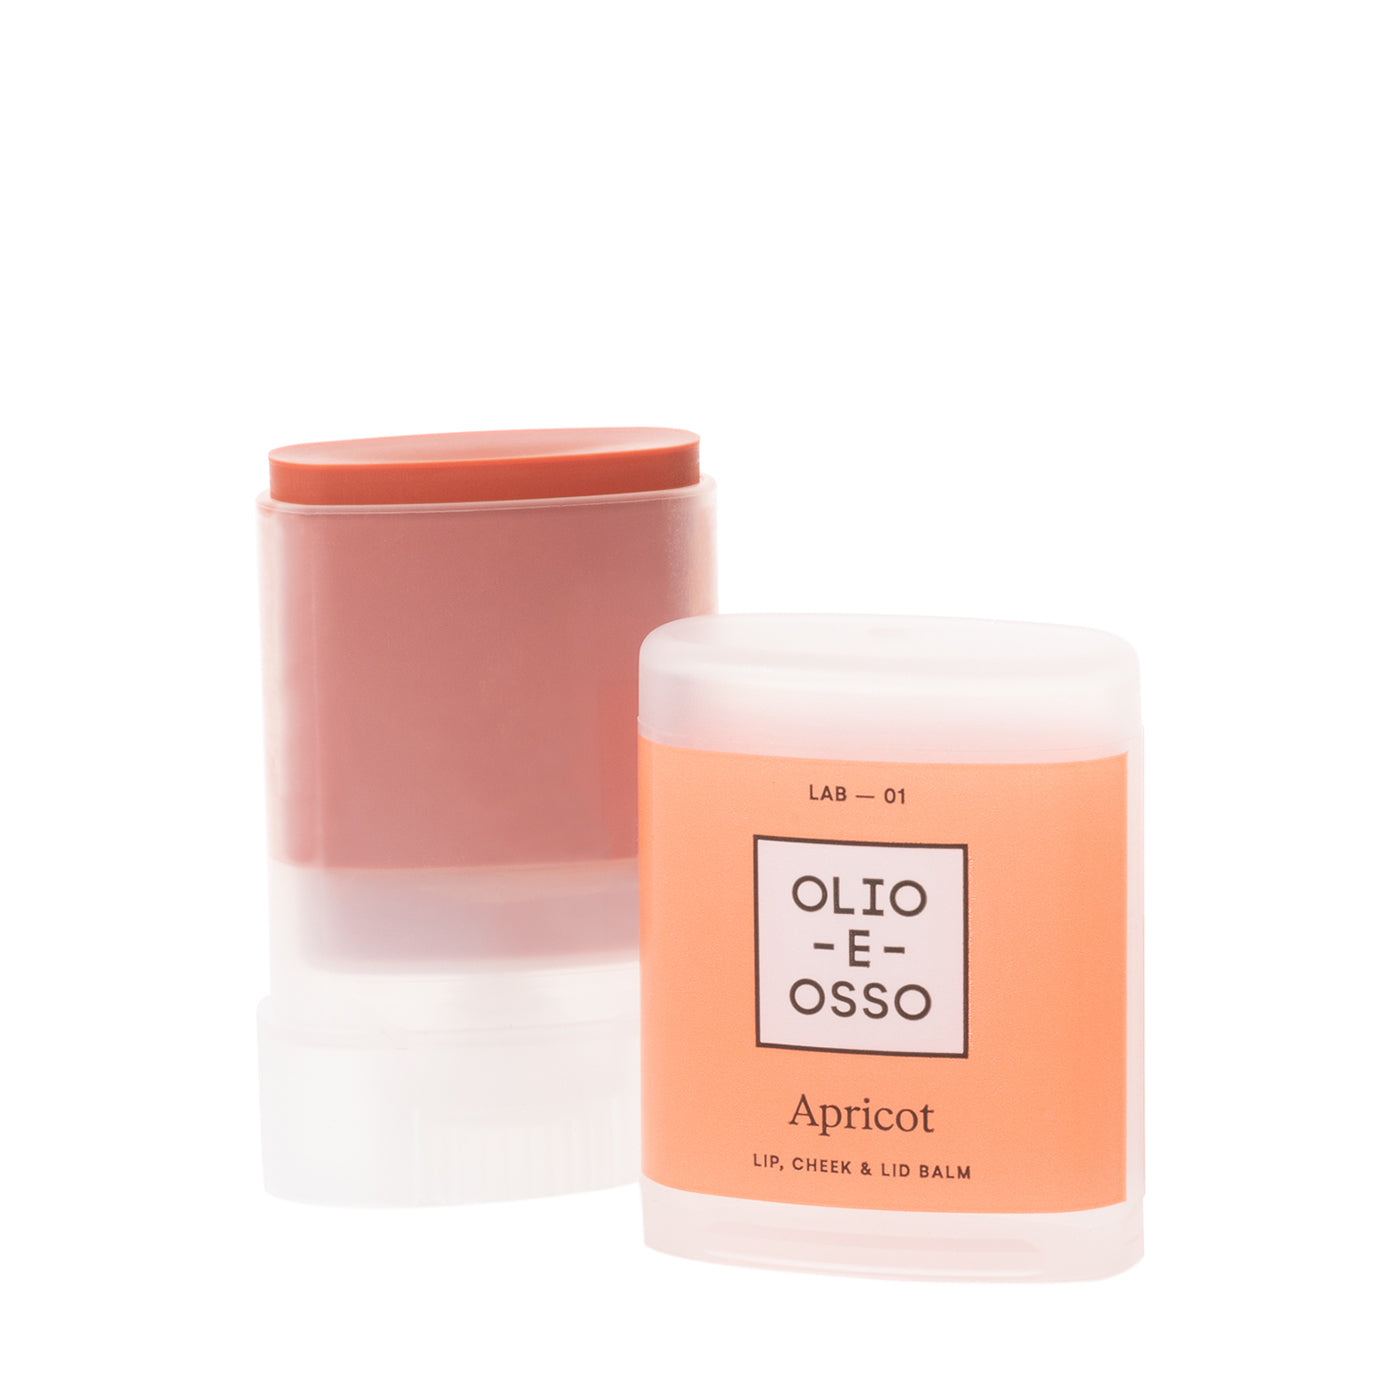 Olio E Osso Balm Lab - 01 Apricot